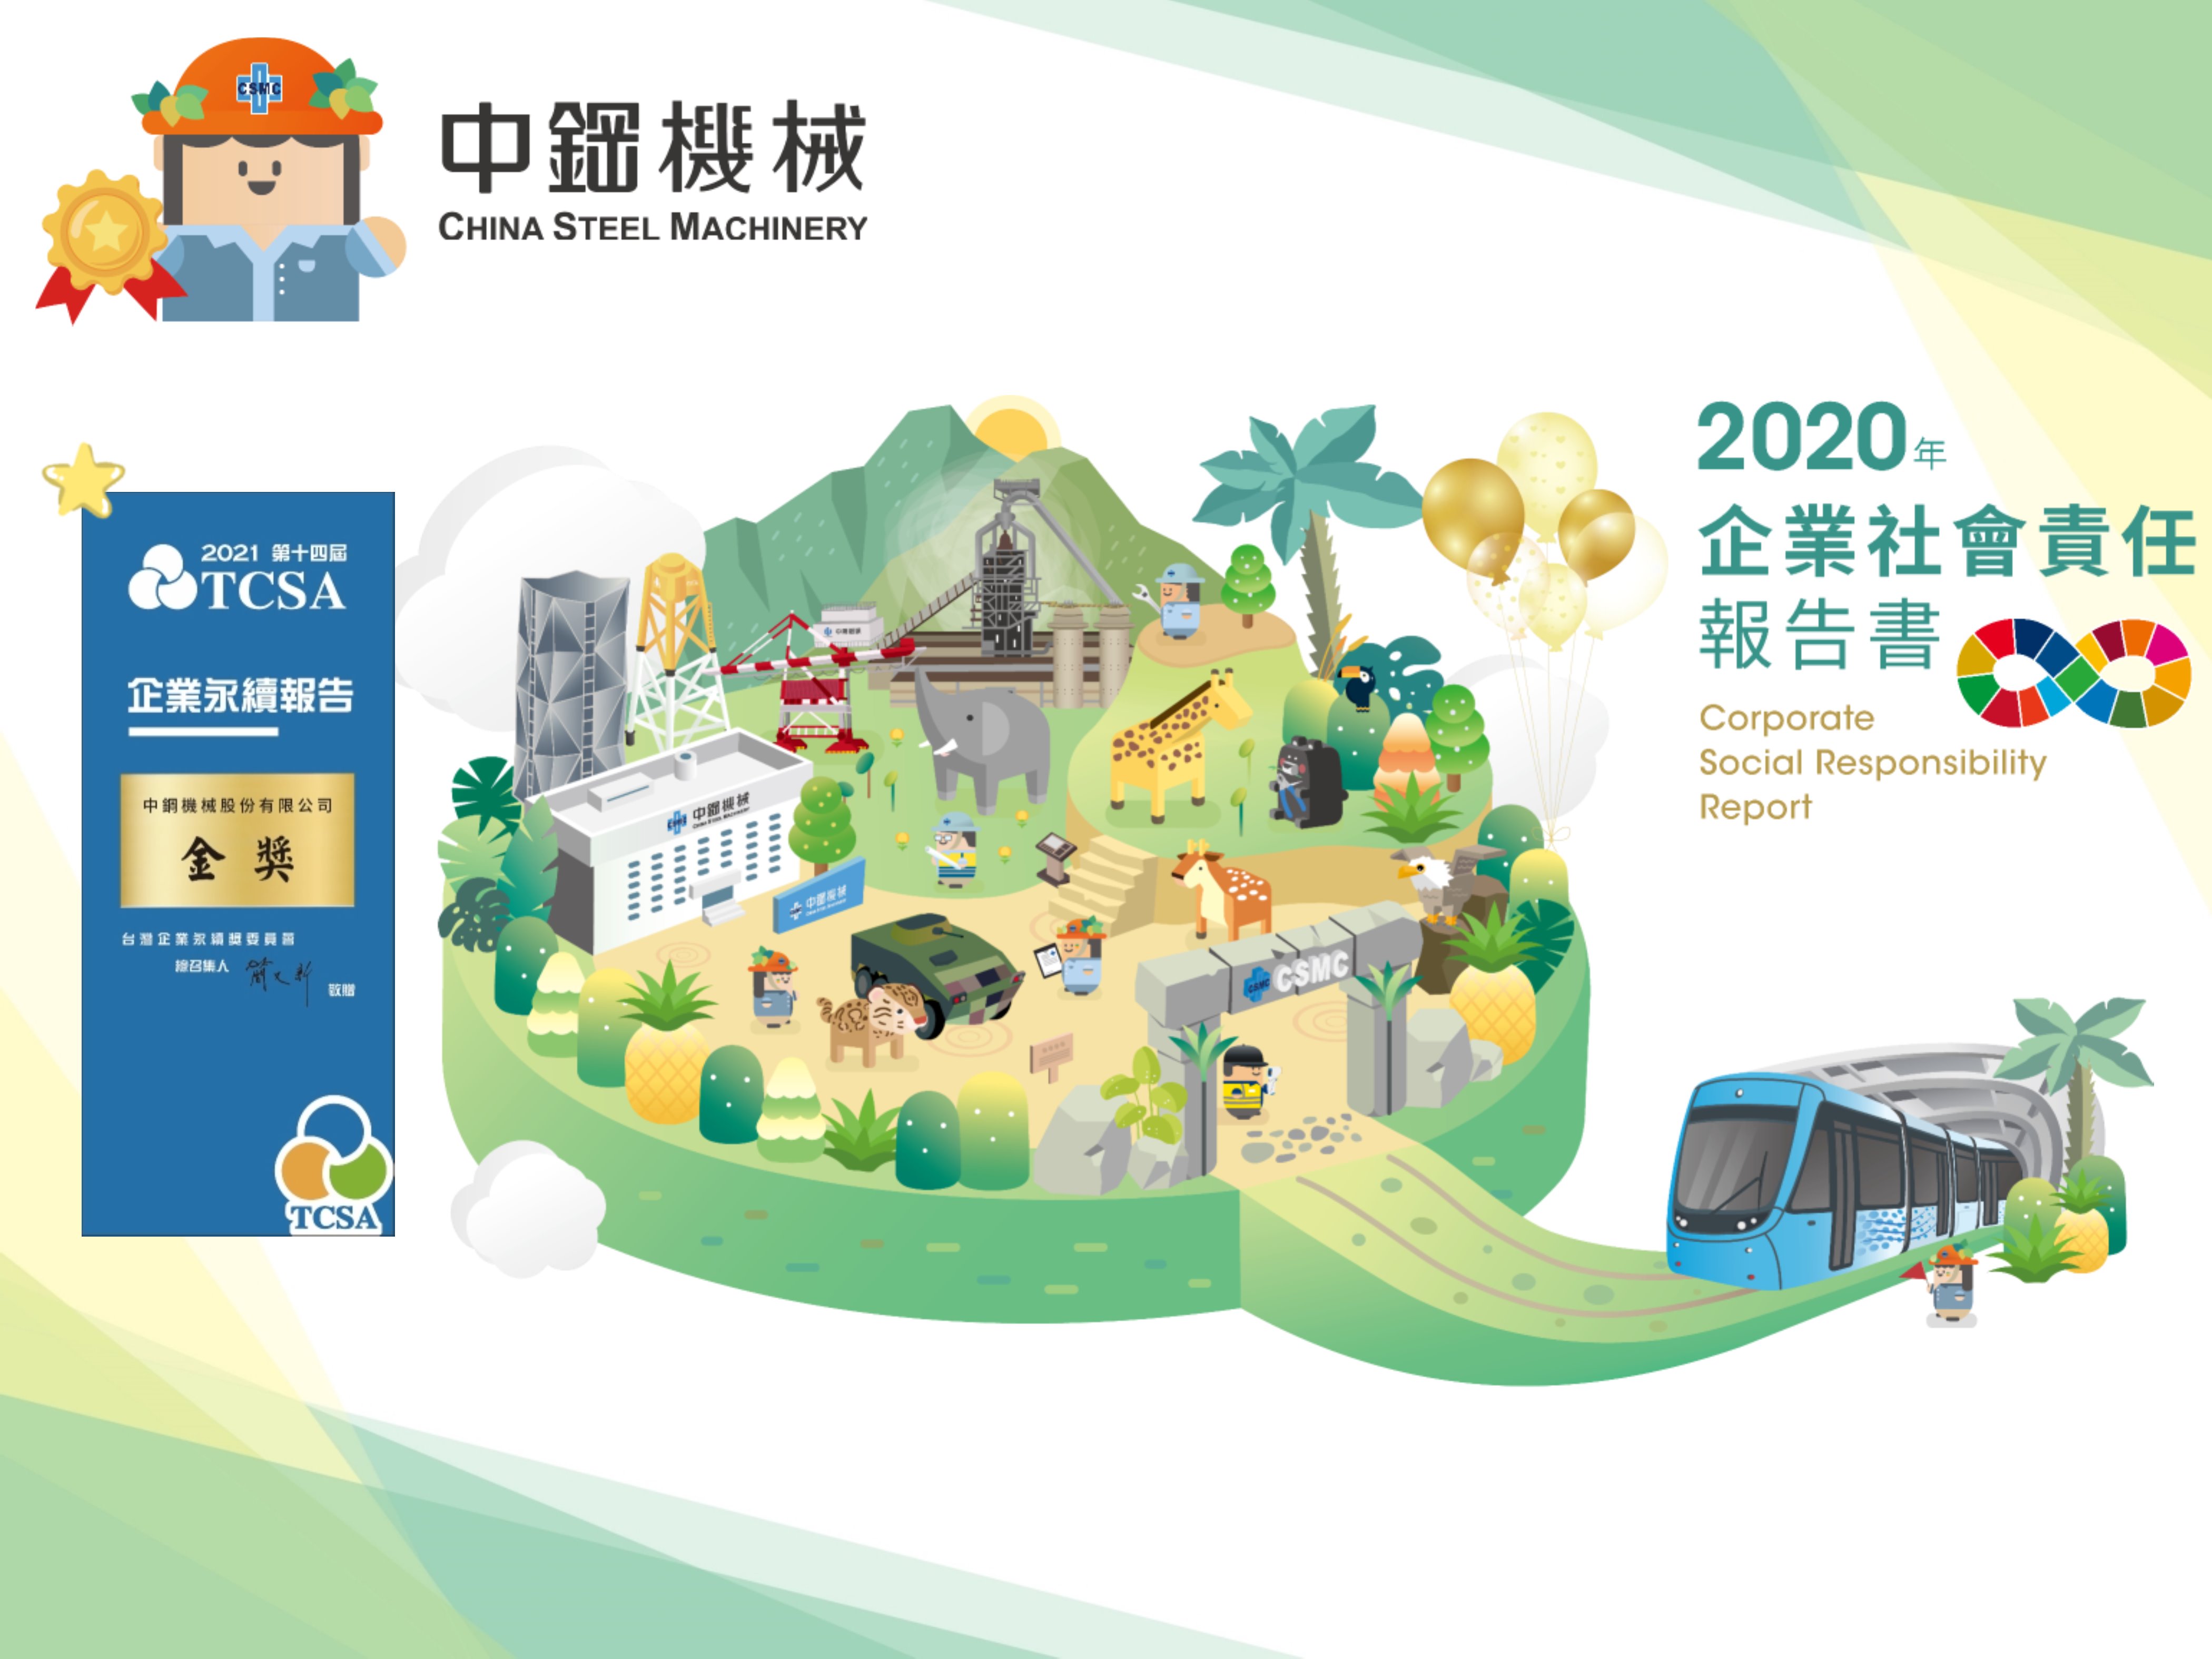 中機2020年度永續報告書再次鍍金♞連續兩年蟬聯TCSA台灣企業永續報告金獎